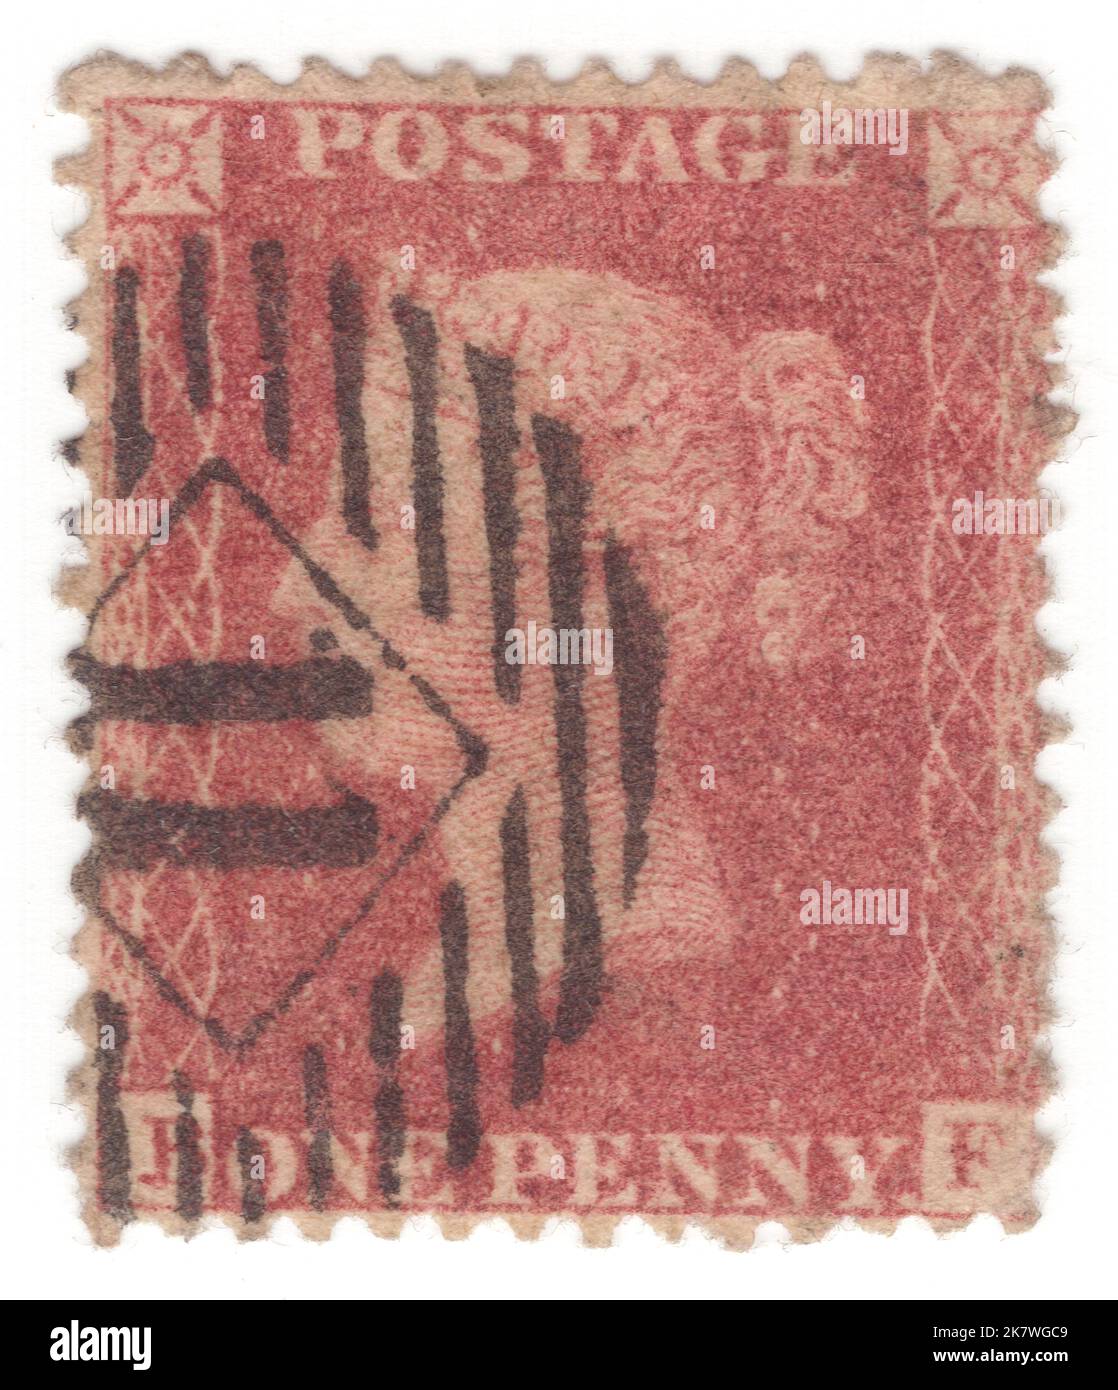 ROYAUME-UNI - 1855: Timbre-poste rouge-brun de 1 pence montrant le portrait de la reine Victoria Banque D'Images